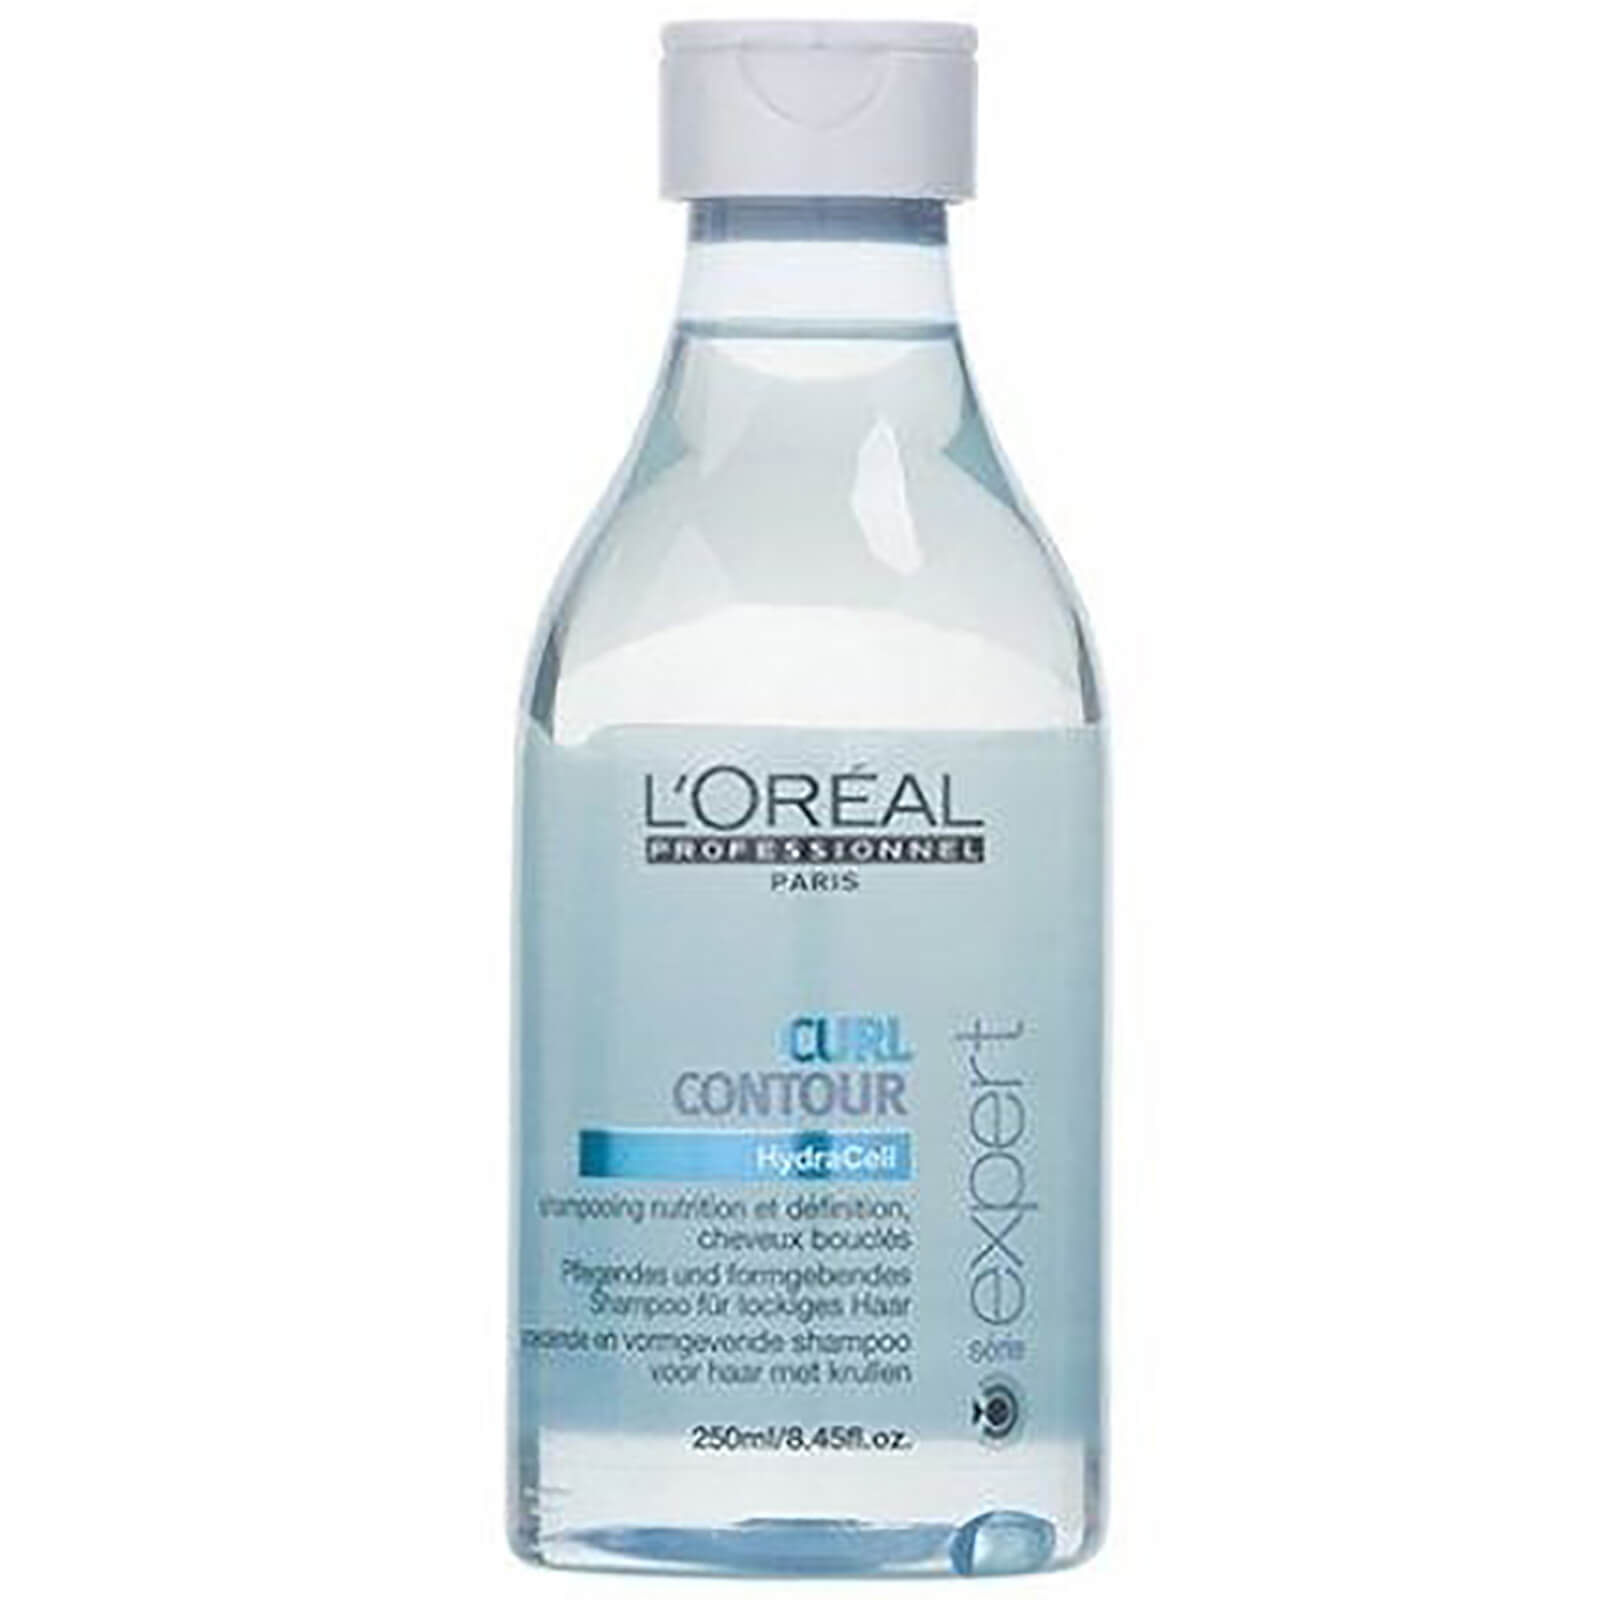 Champú nutrición y definición cabello rizado L'Oréal Série Expert Curl Contour 200ml